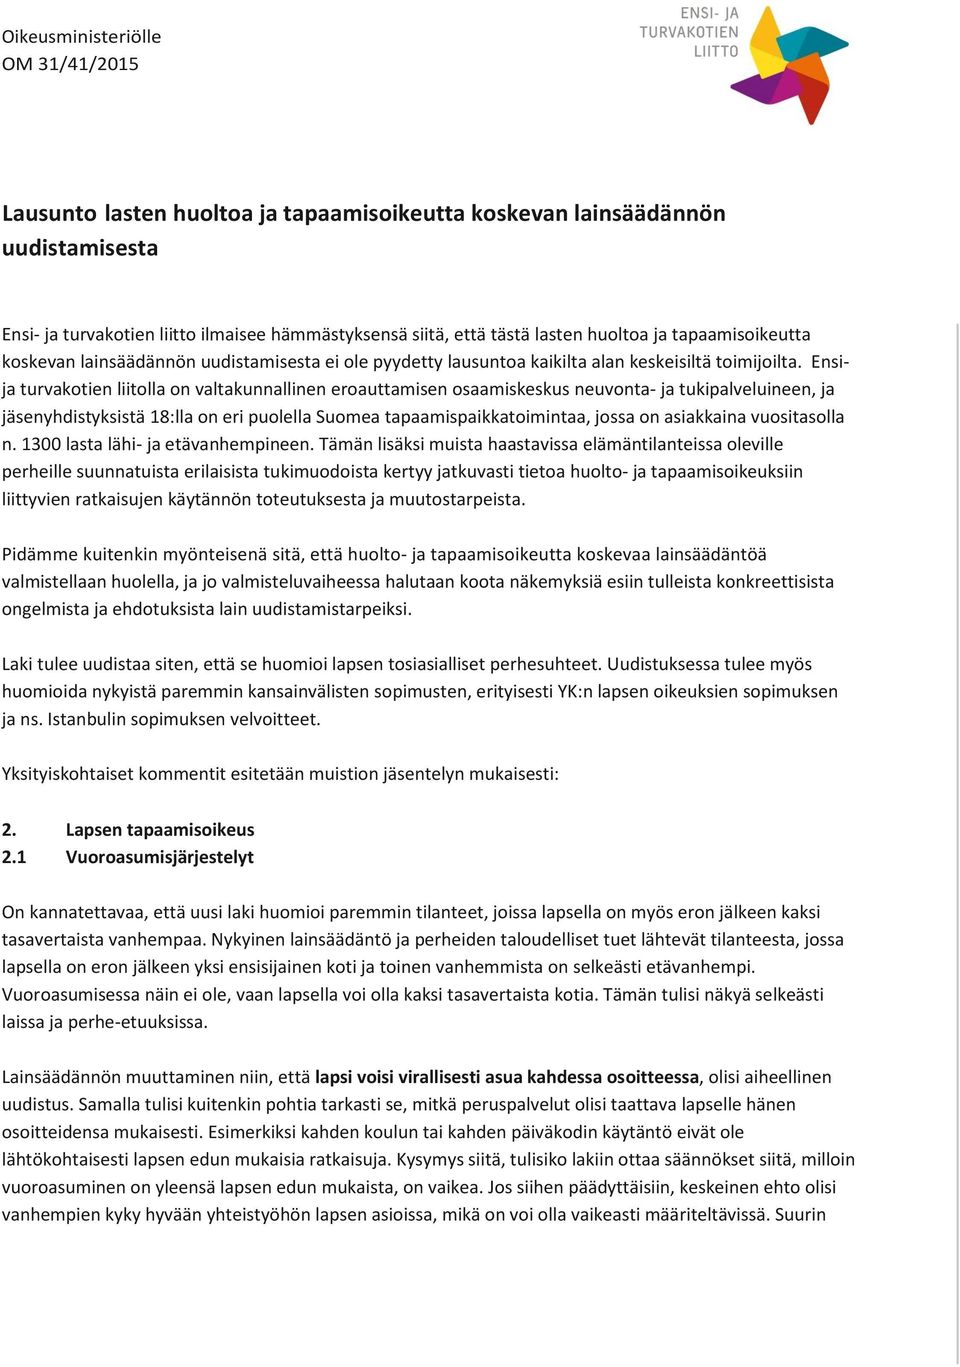 Ensija turvakotien liitolla on valtakunnallinen eroauttamisen osaamiskeskus neuvonta- ja tukipalveluineen, ja jäsenyhdistyksistä 18:lla on eri puolella Suomea tapaamispaikkatoimintaa, jossa on